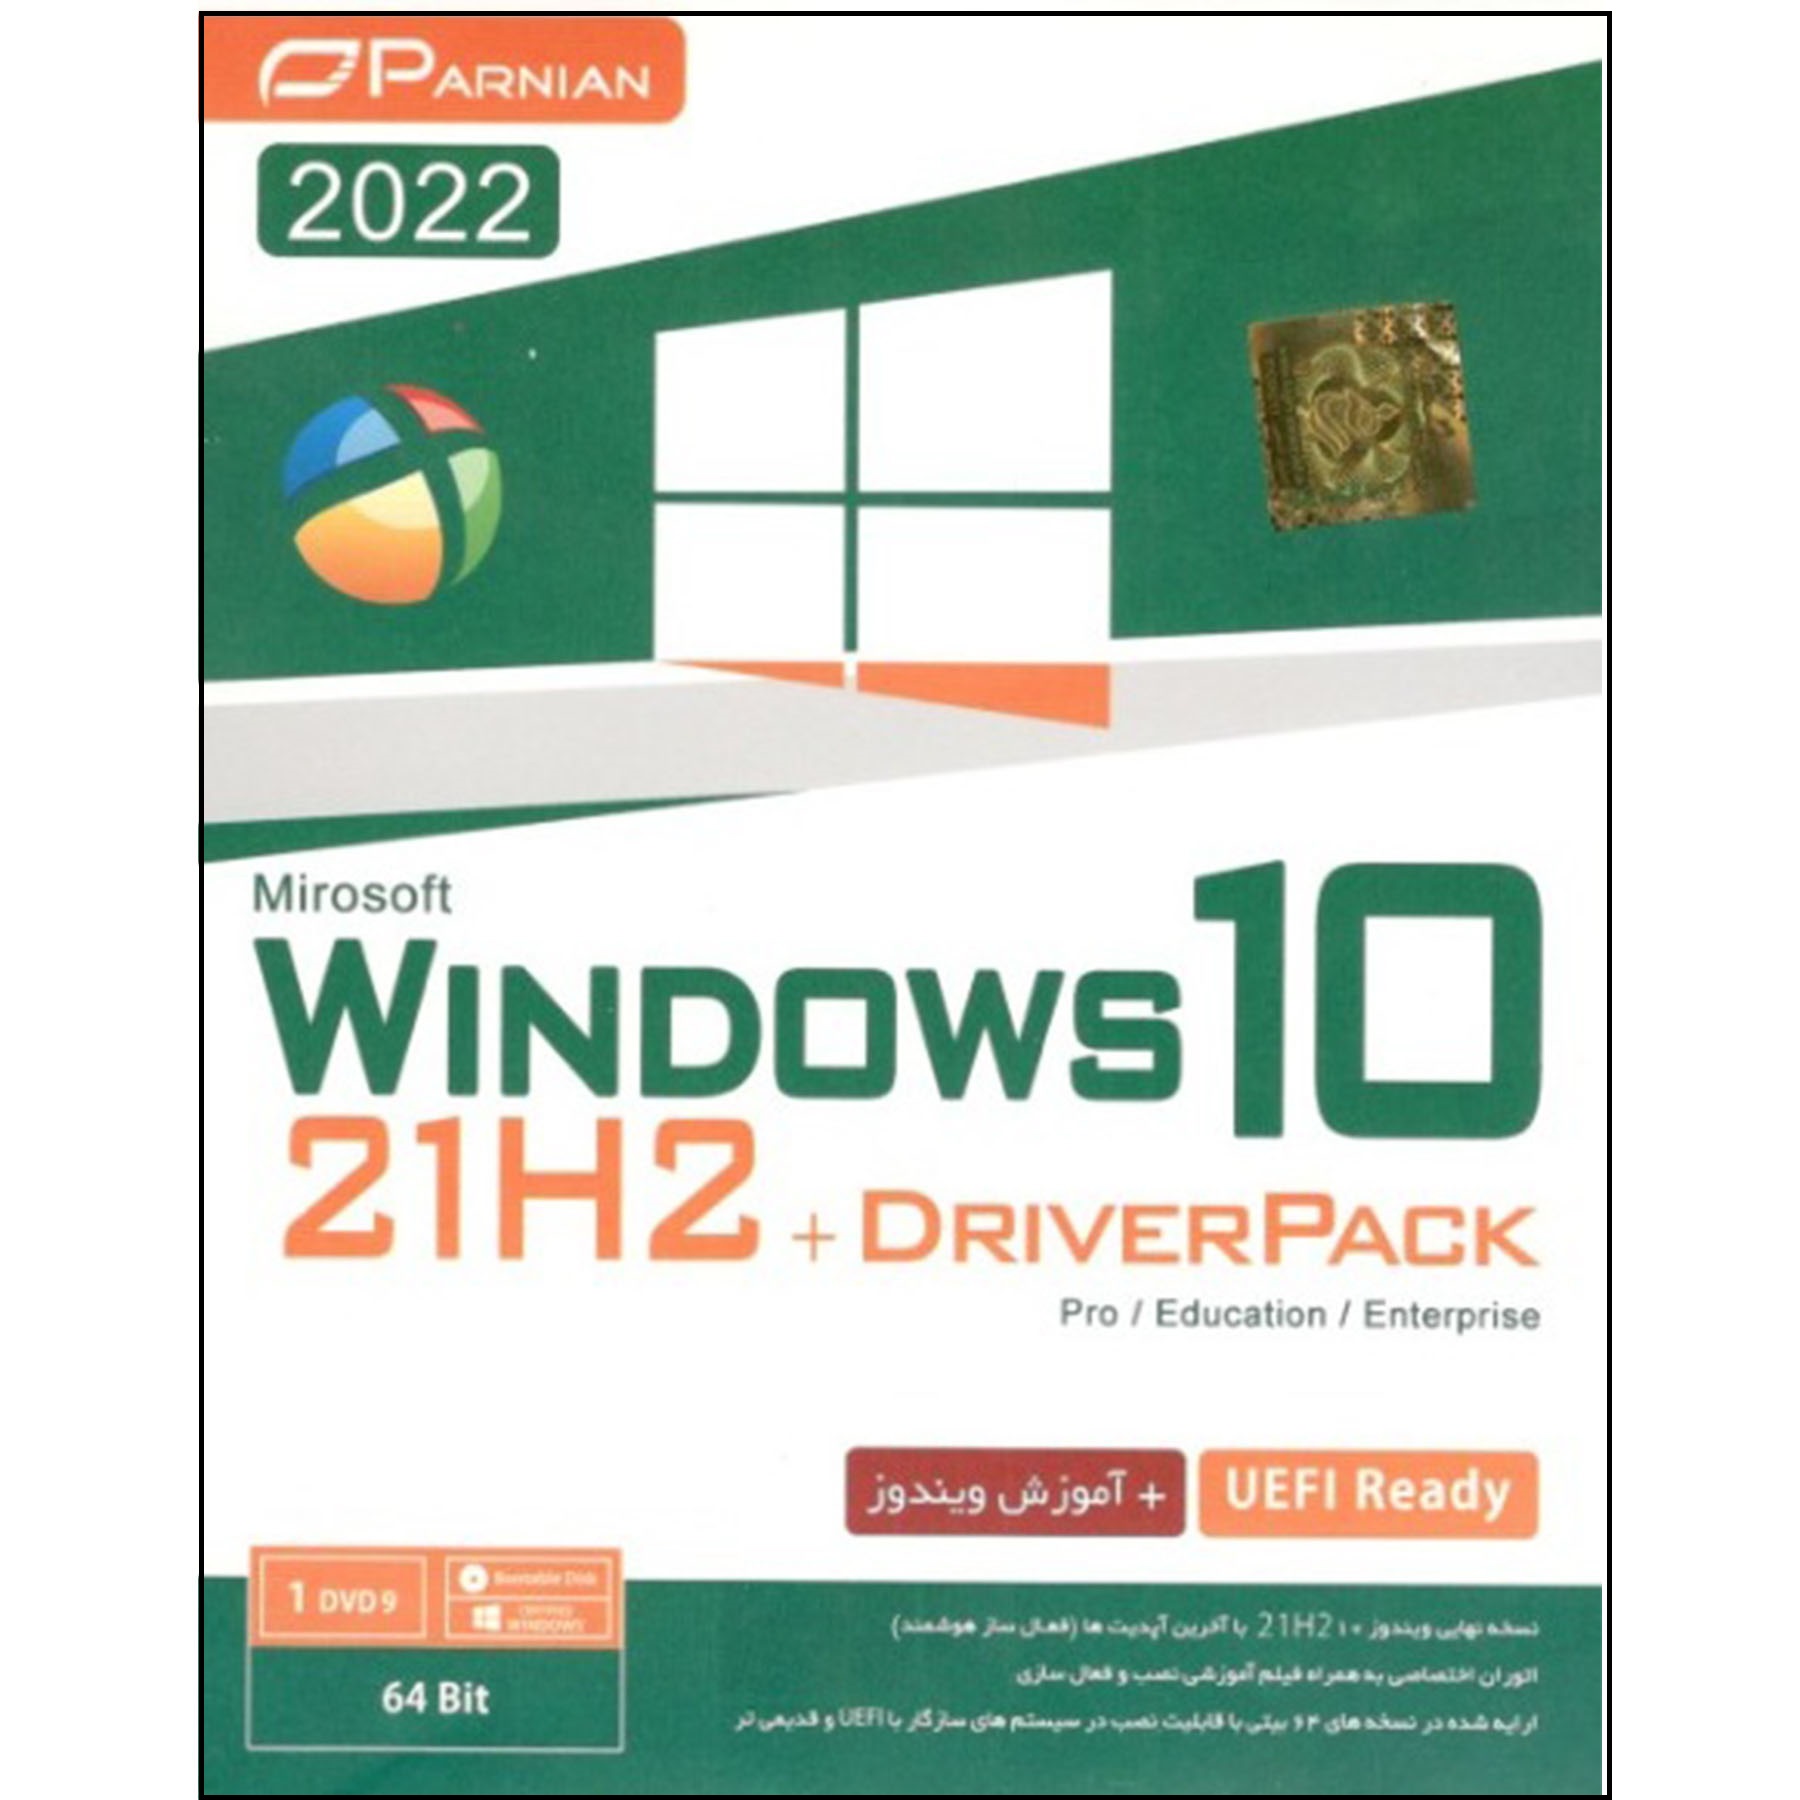 سیستم عامل windows 10 21h2 +driverpack UEFI نشر پرنیان